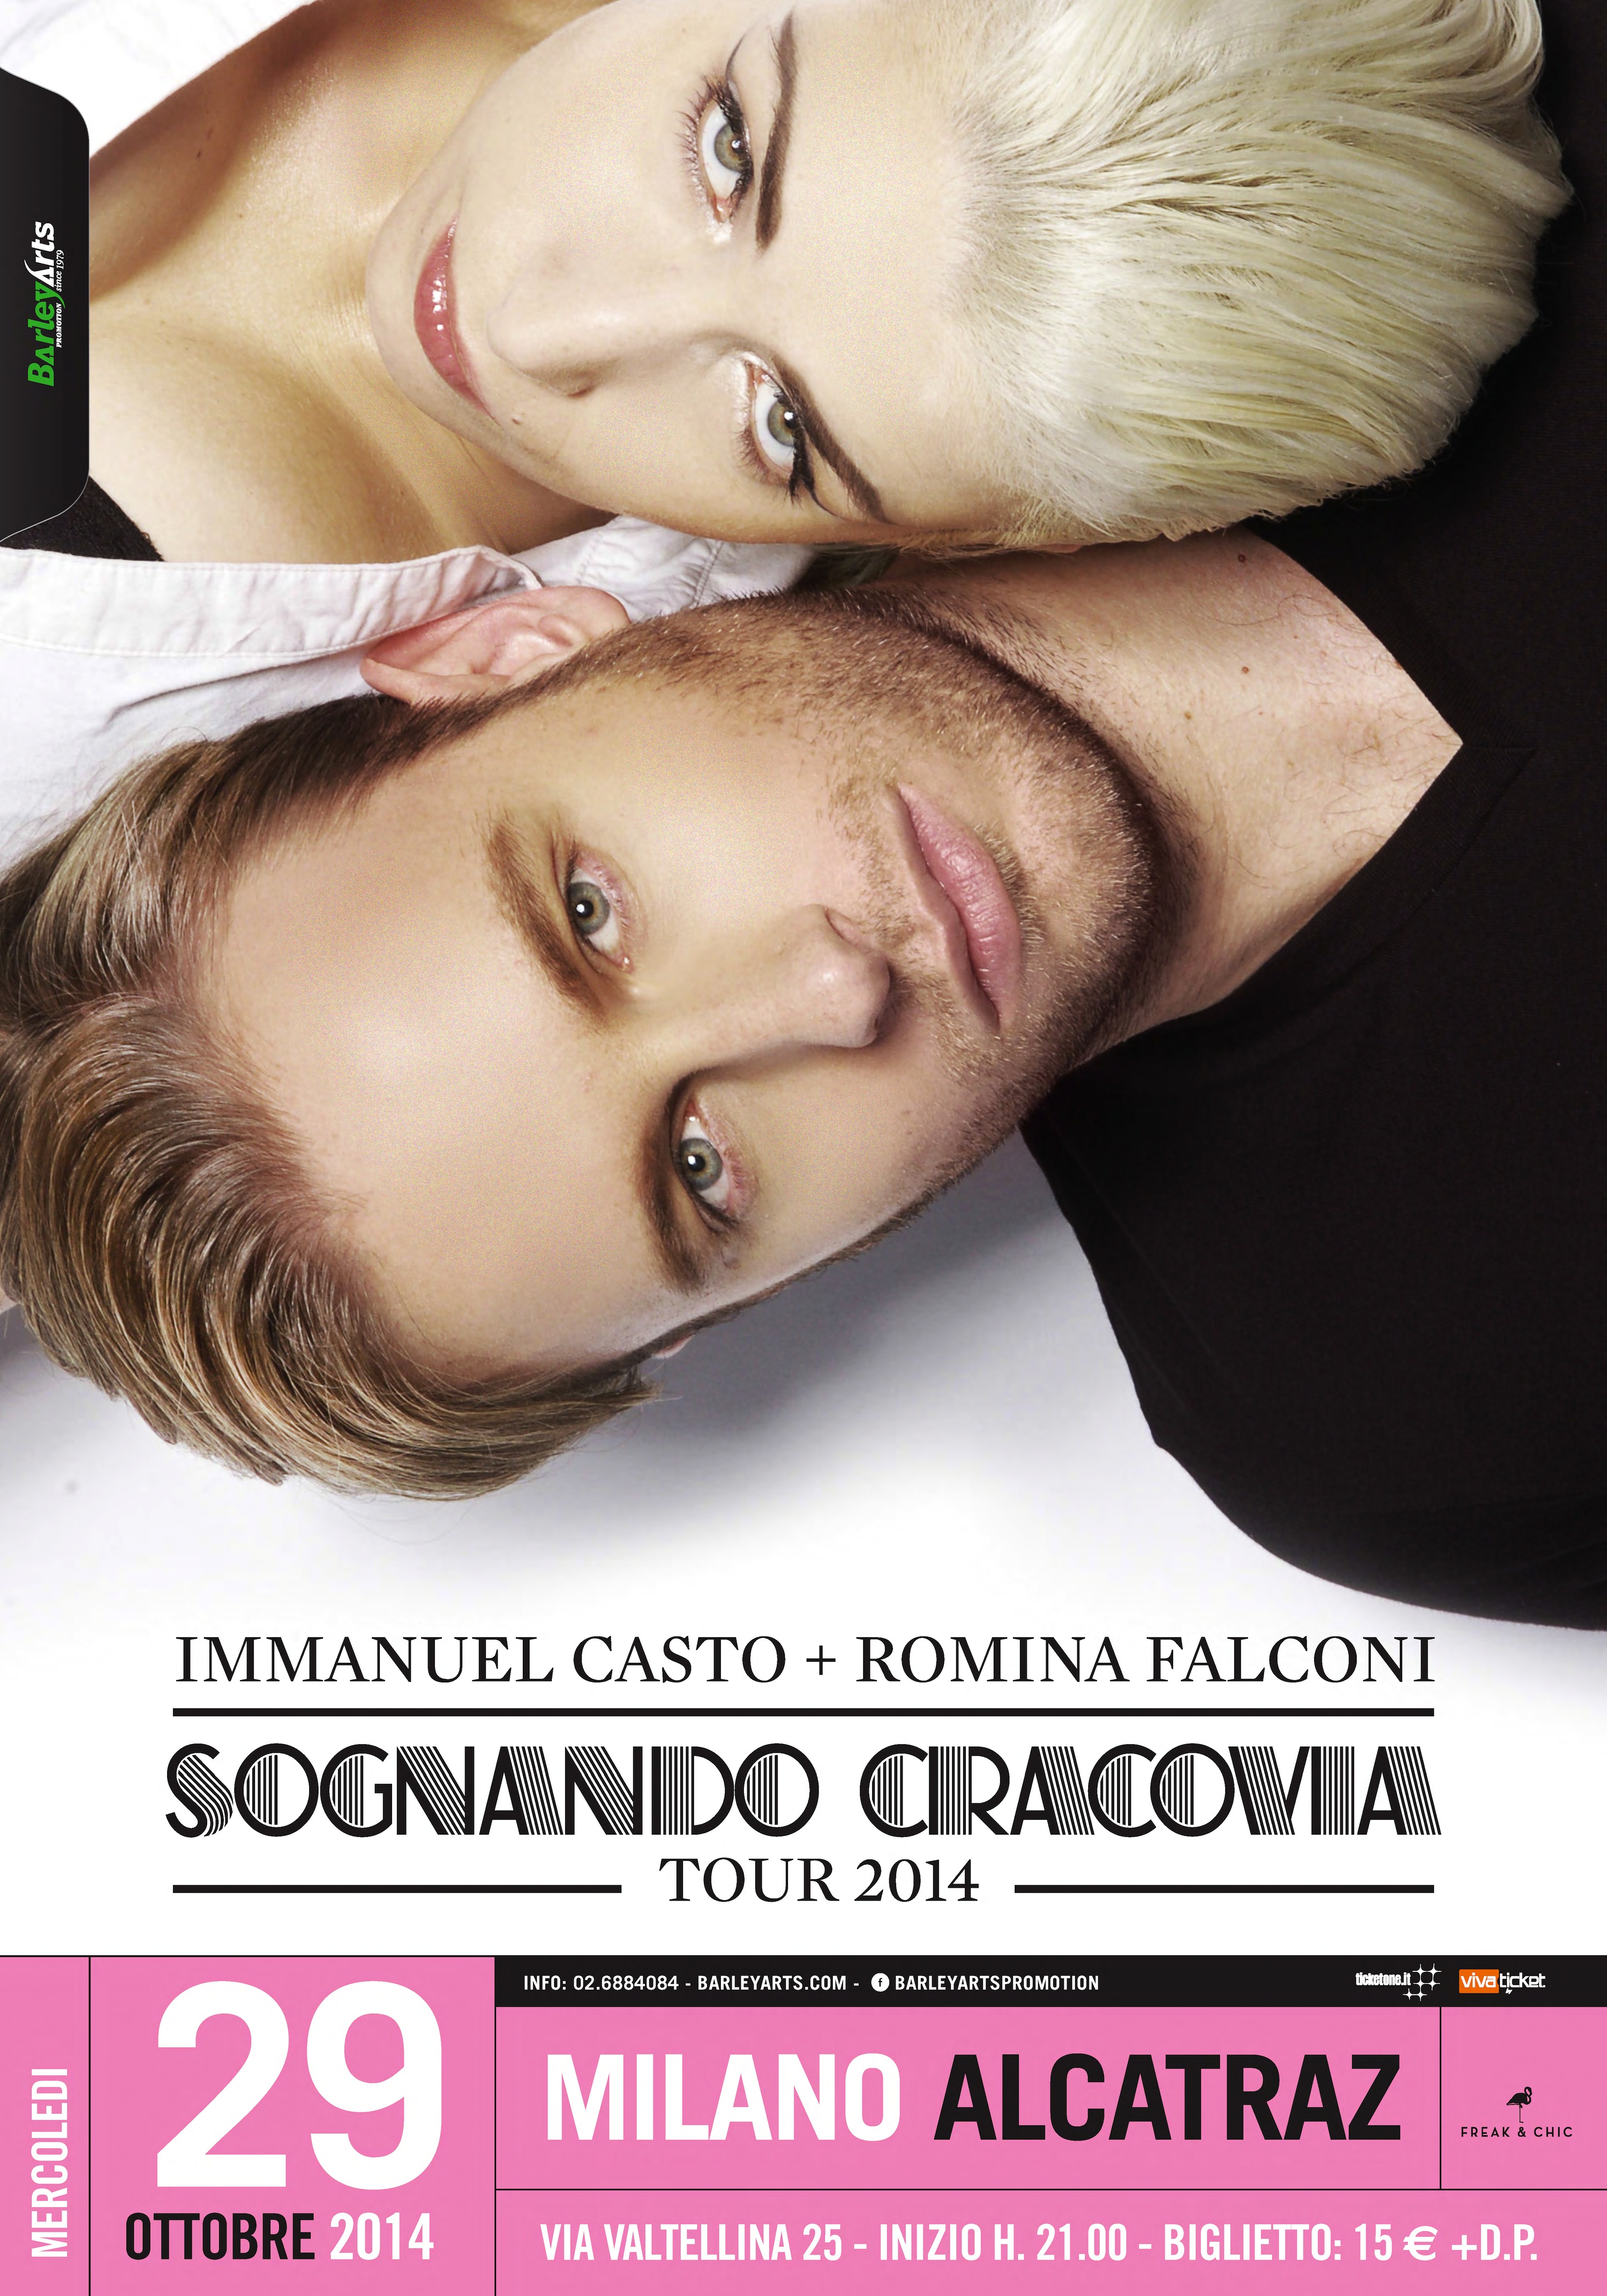 IMMANUEL CASTO + ROMINA FALCONI: le date del ‘Sognando Cracovia Tour’